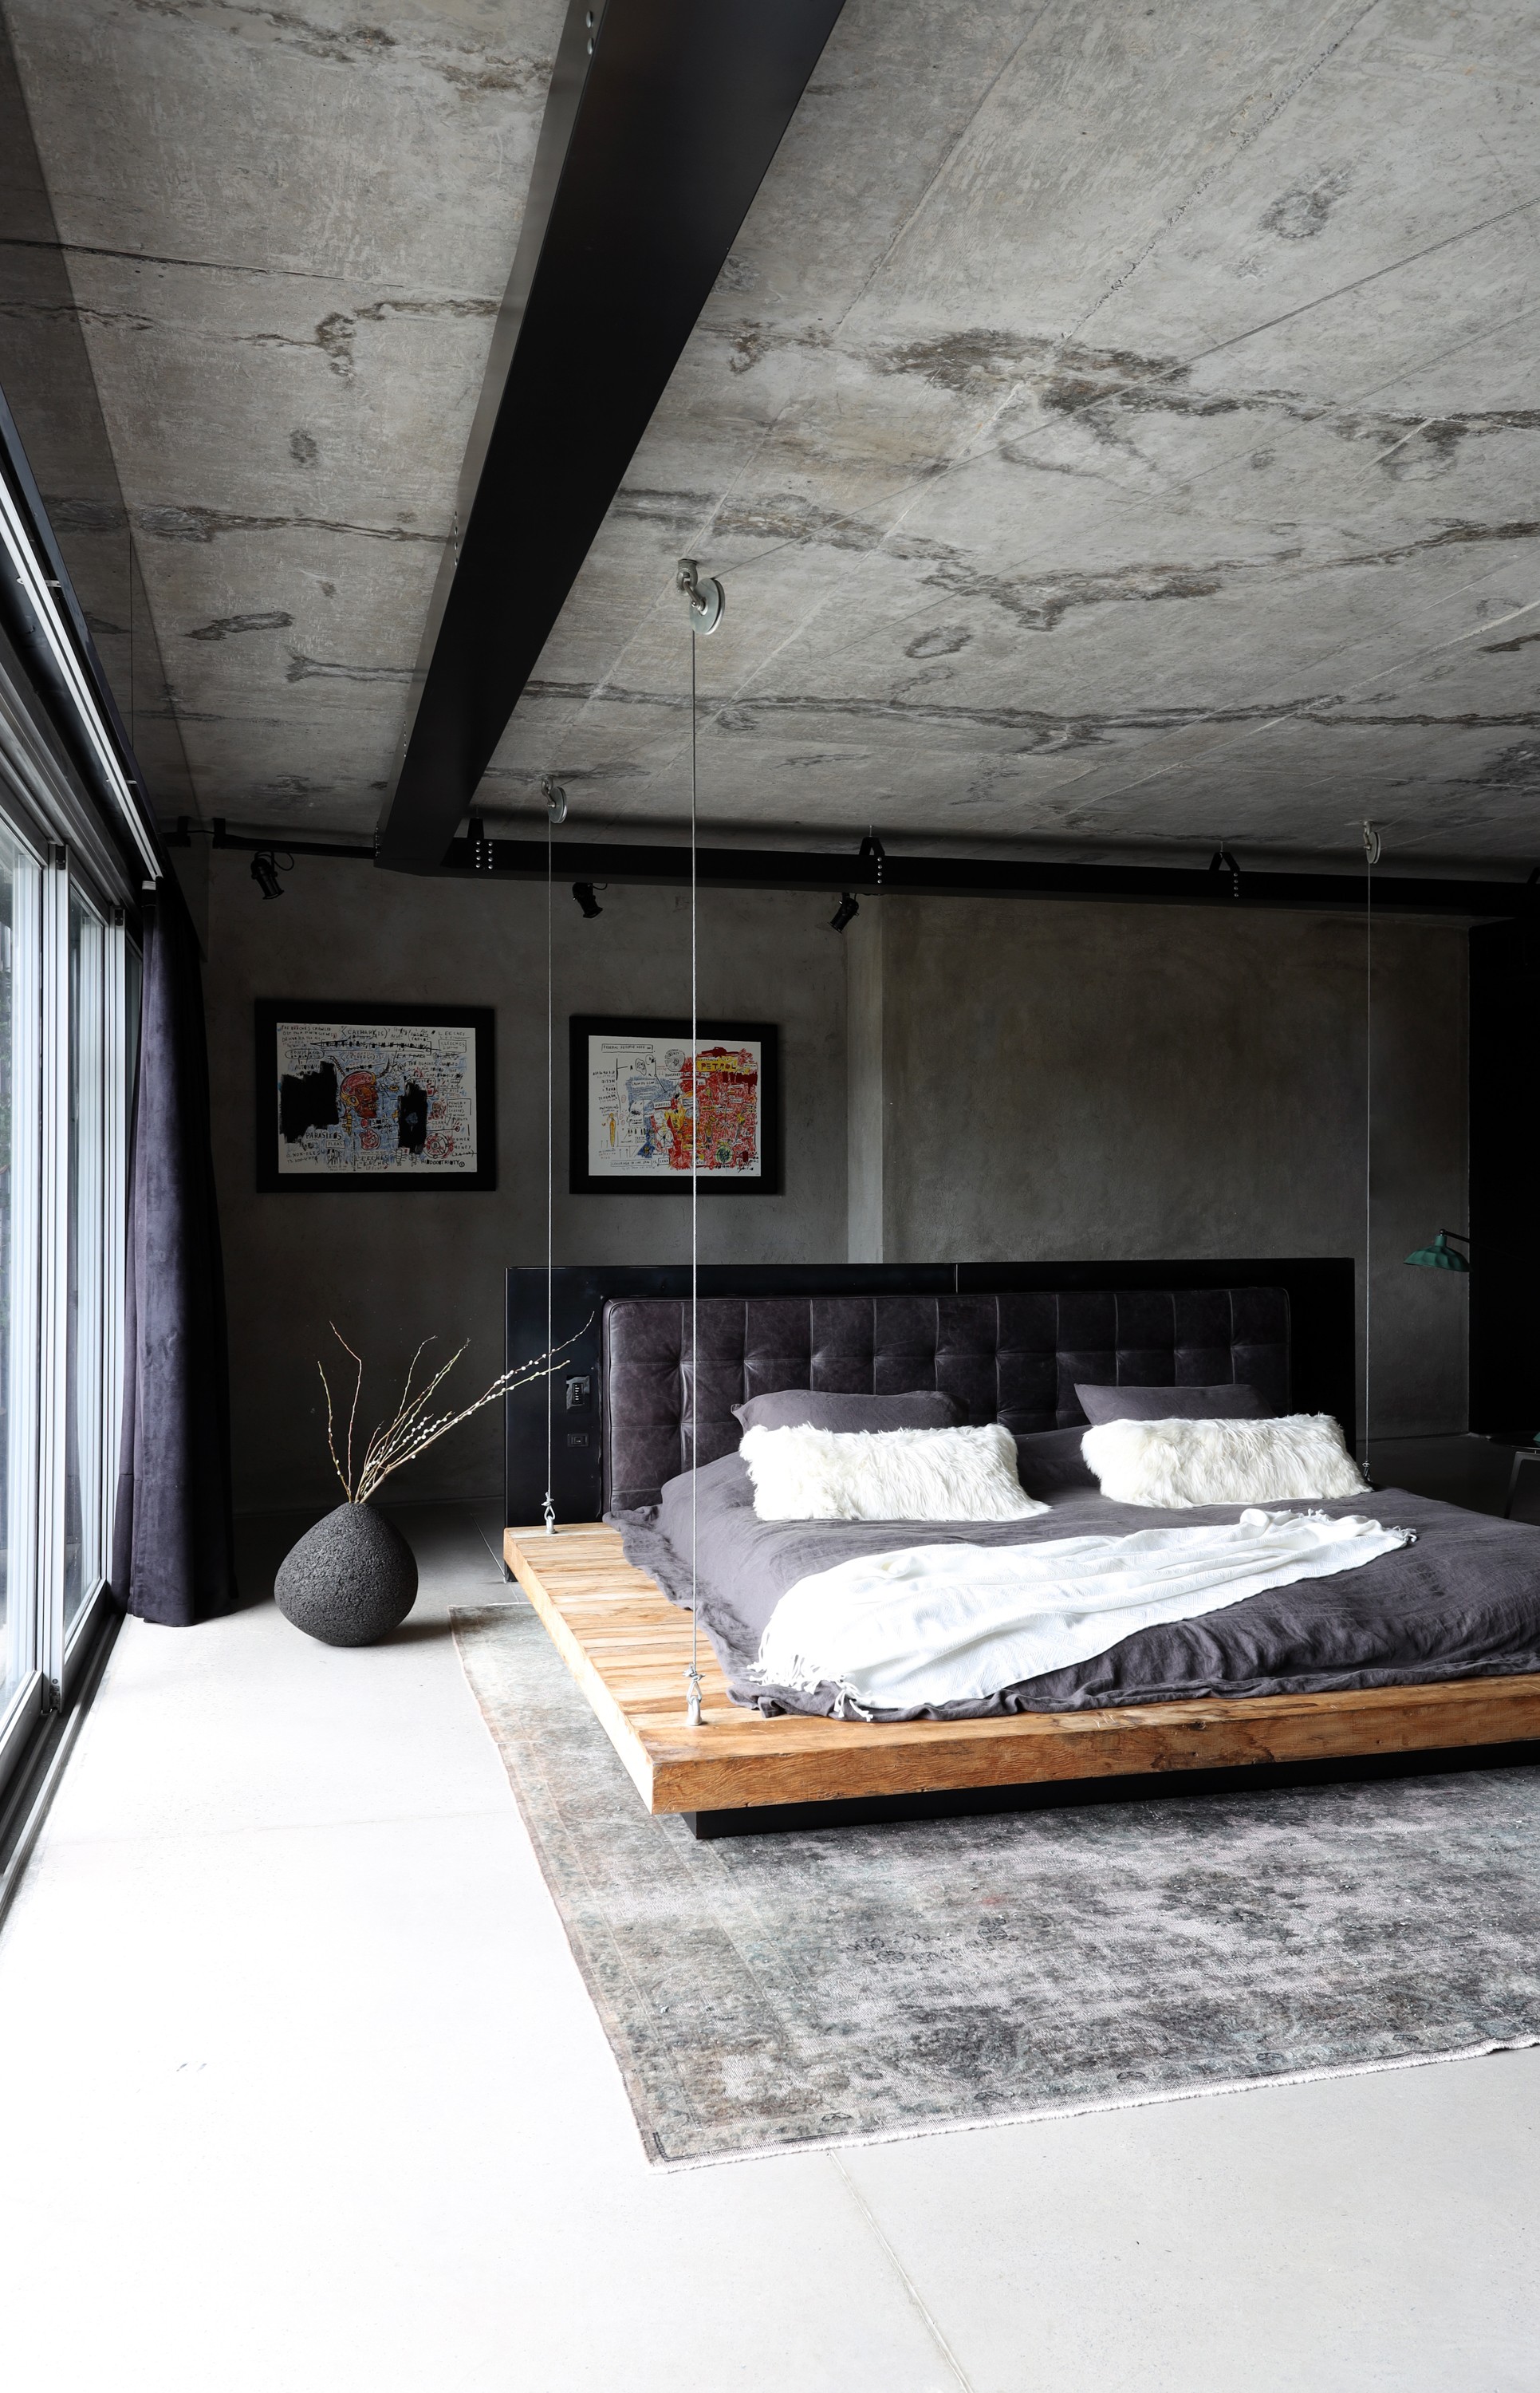 Décor do dia: quarto com estilo industrial e cama suspensa (Foto: Marco Antonio)